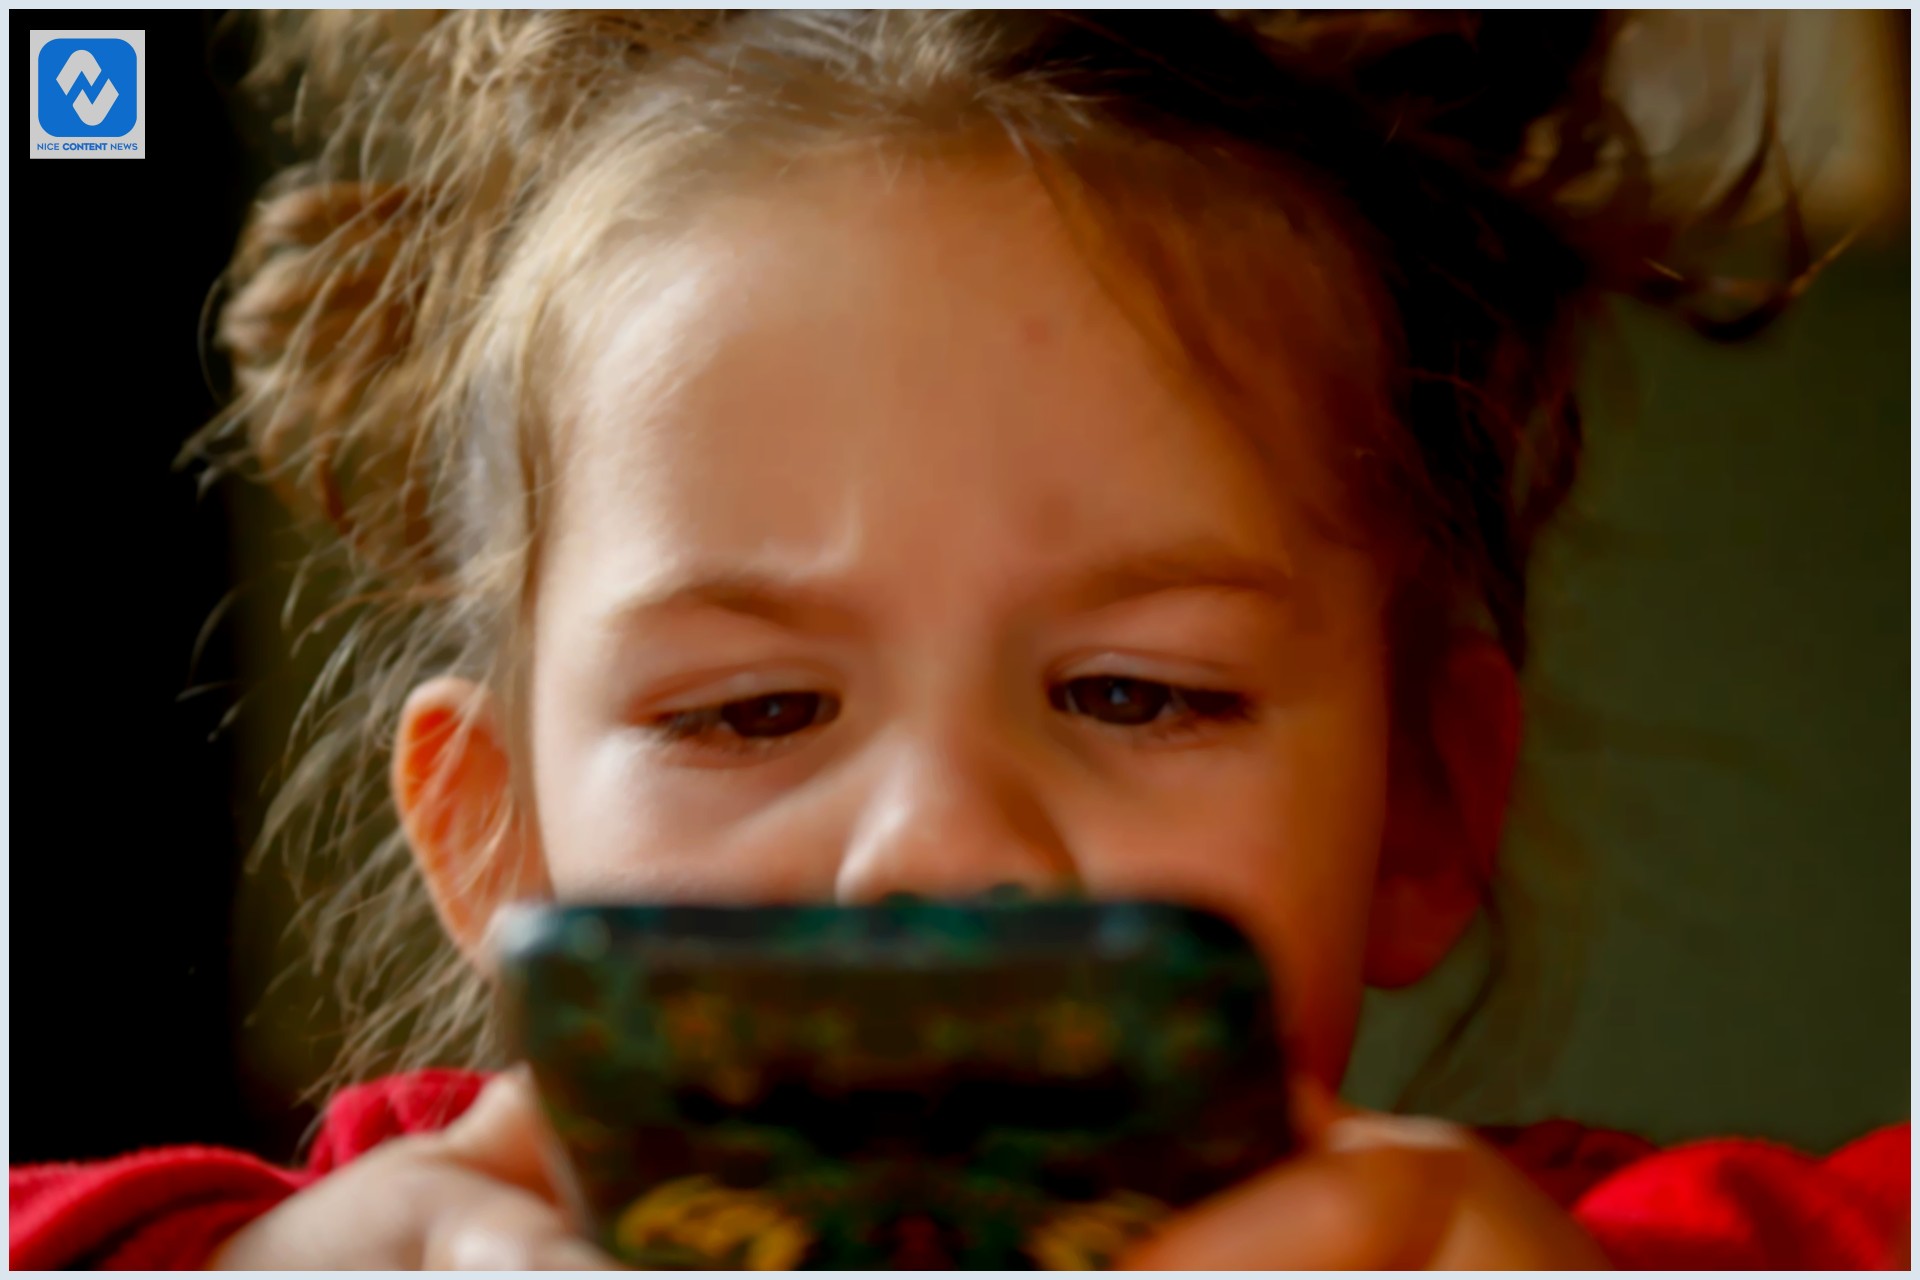 Criança mexendo em um celular